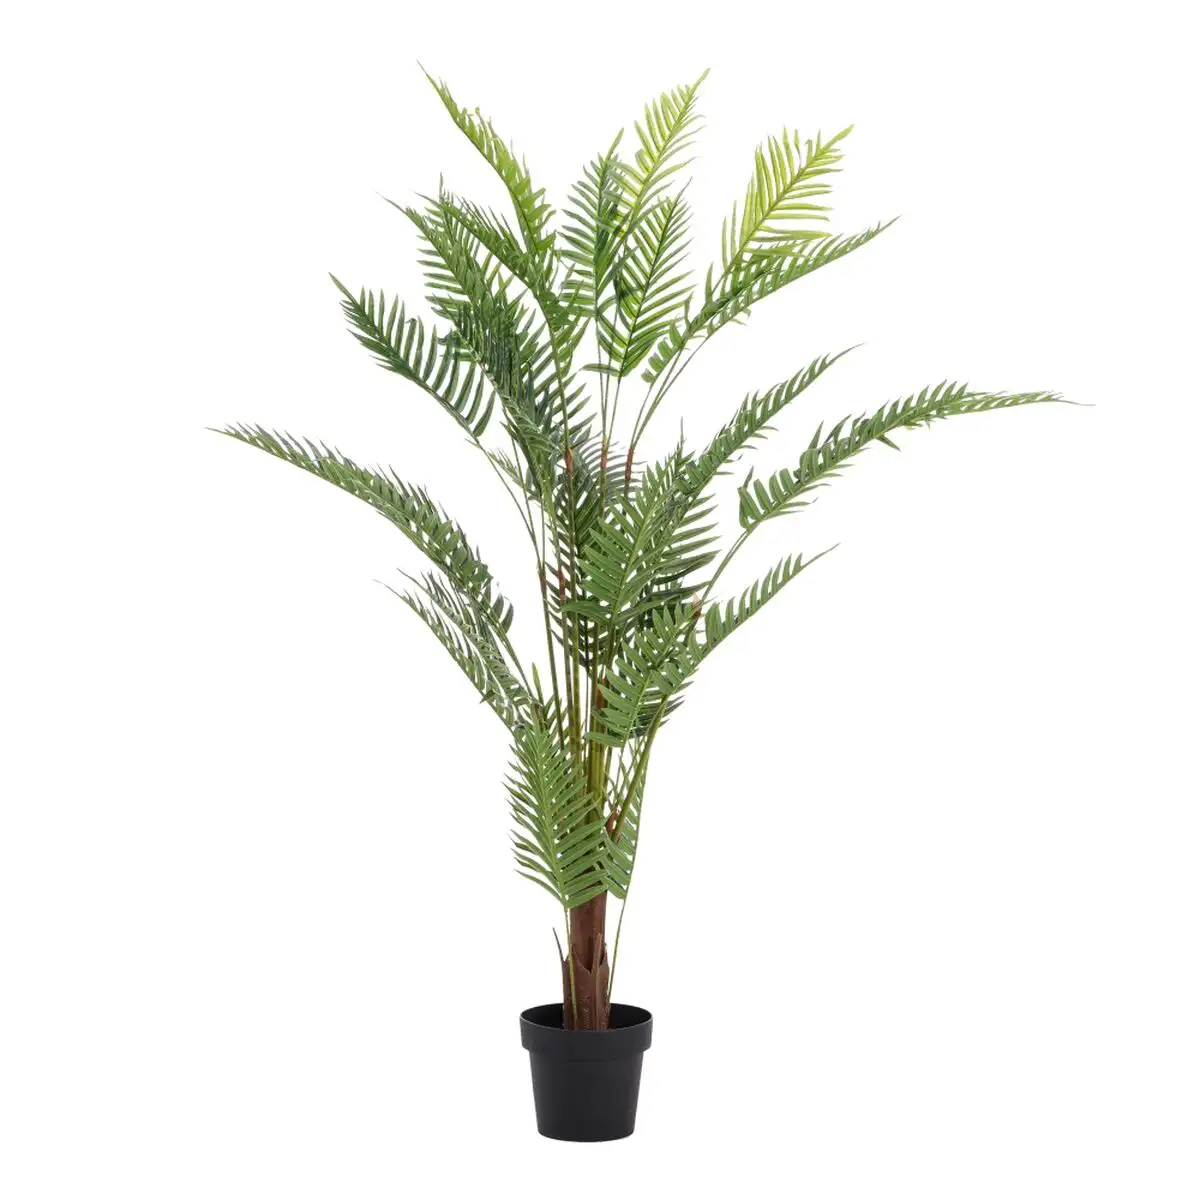 Plante decorative areca vert pvc 150 cm palmier_8165. DIAYTAR SENEGAL - L'Art du Shopping Distinctif. Naviguez à travers notre gamme soigneusement sélectionnée et choisissez des produits qui définissent votre mode de vie.